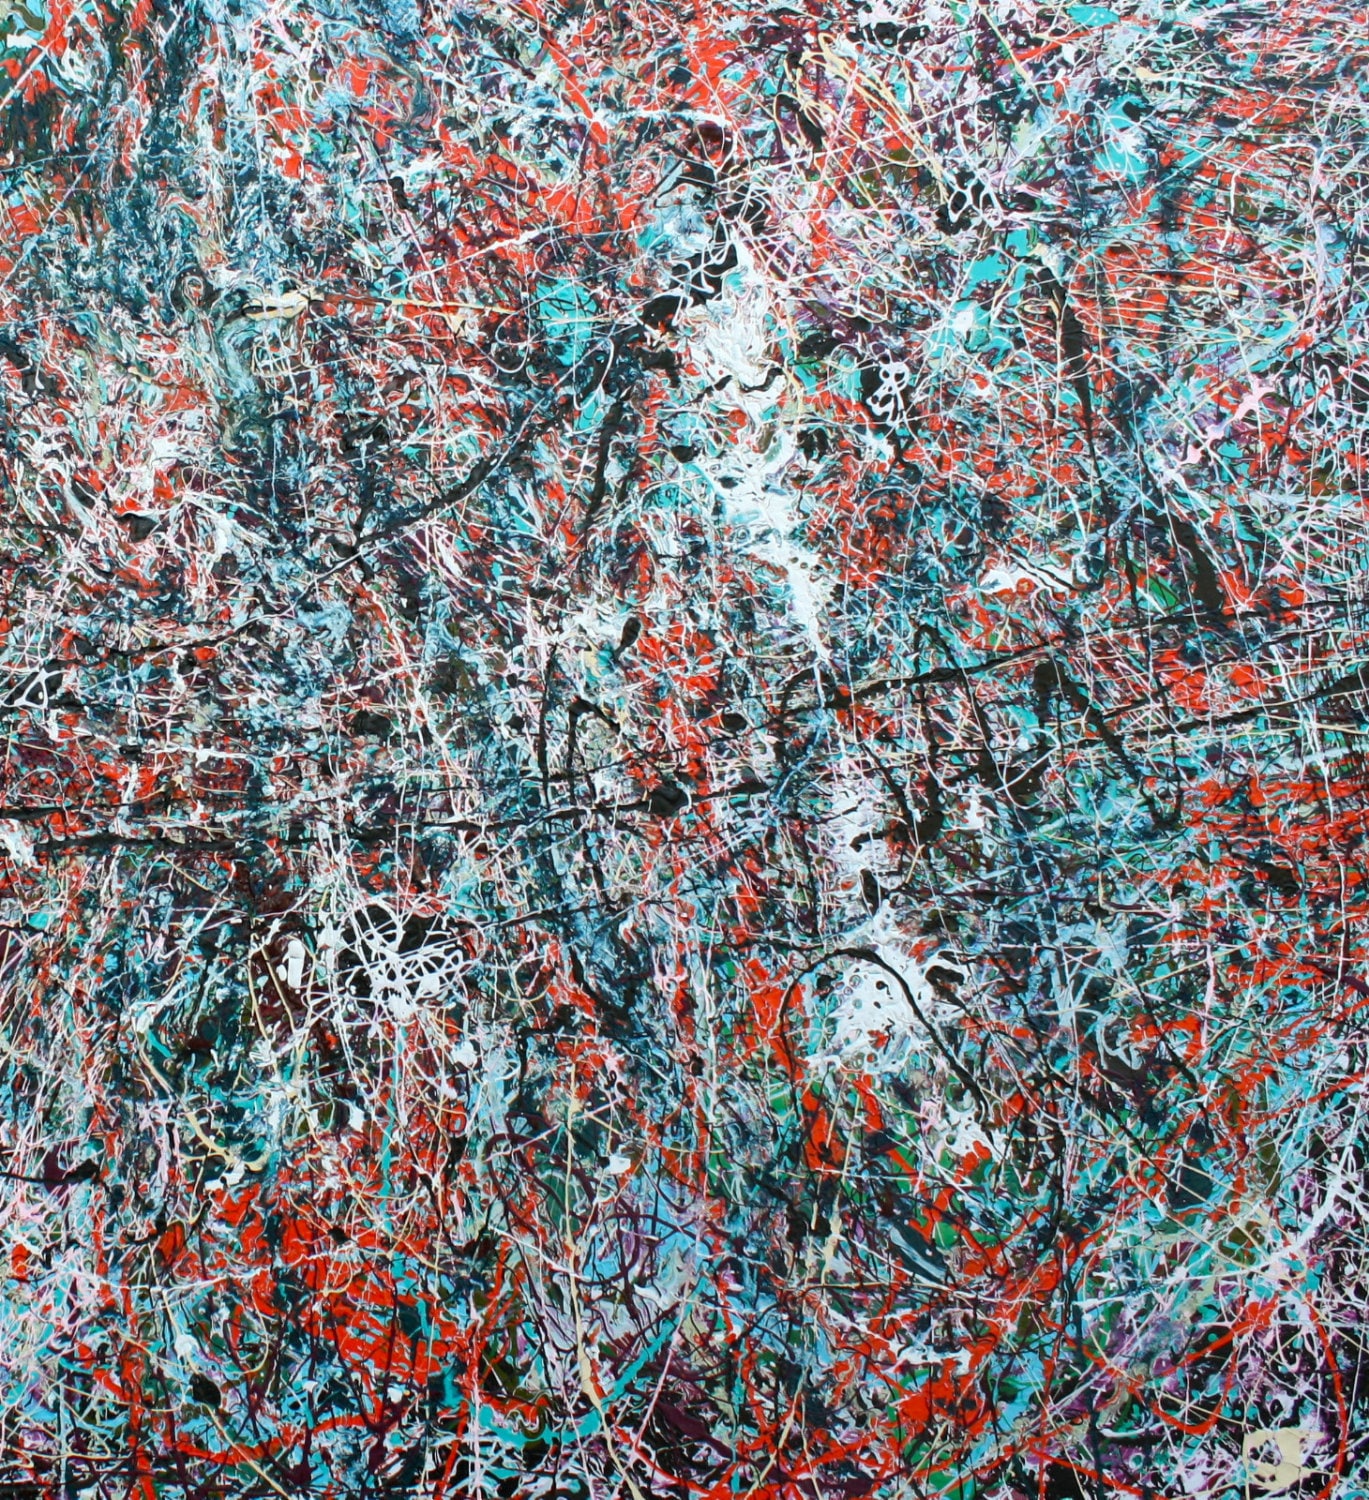 Jackson Pollock Drip Art